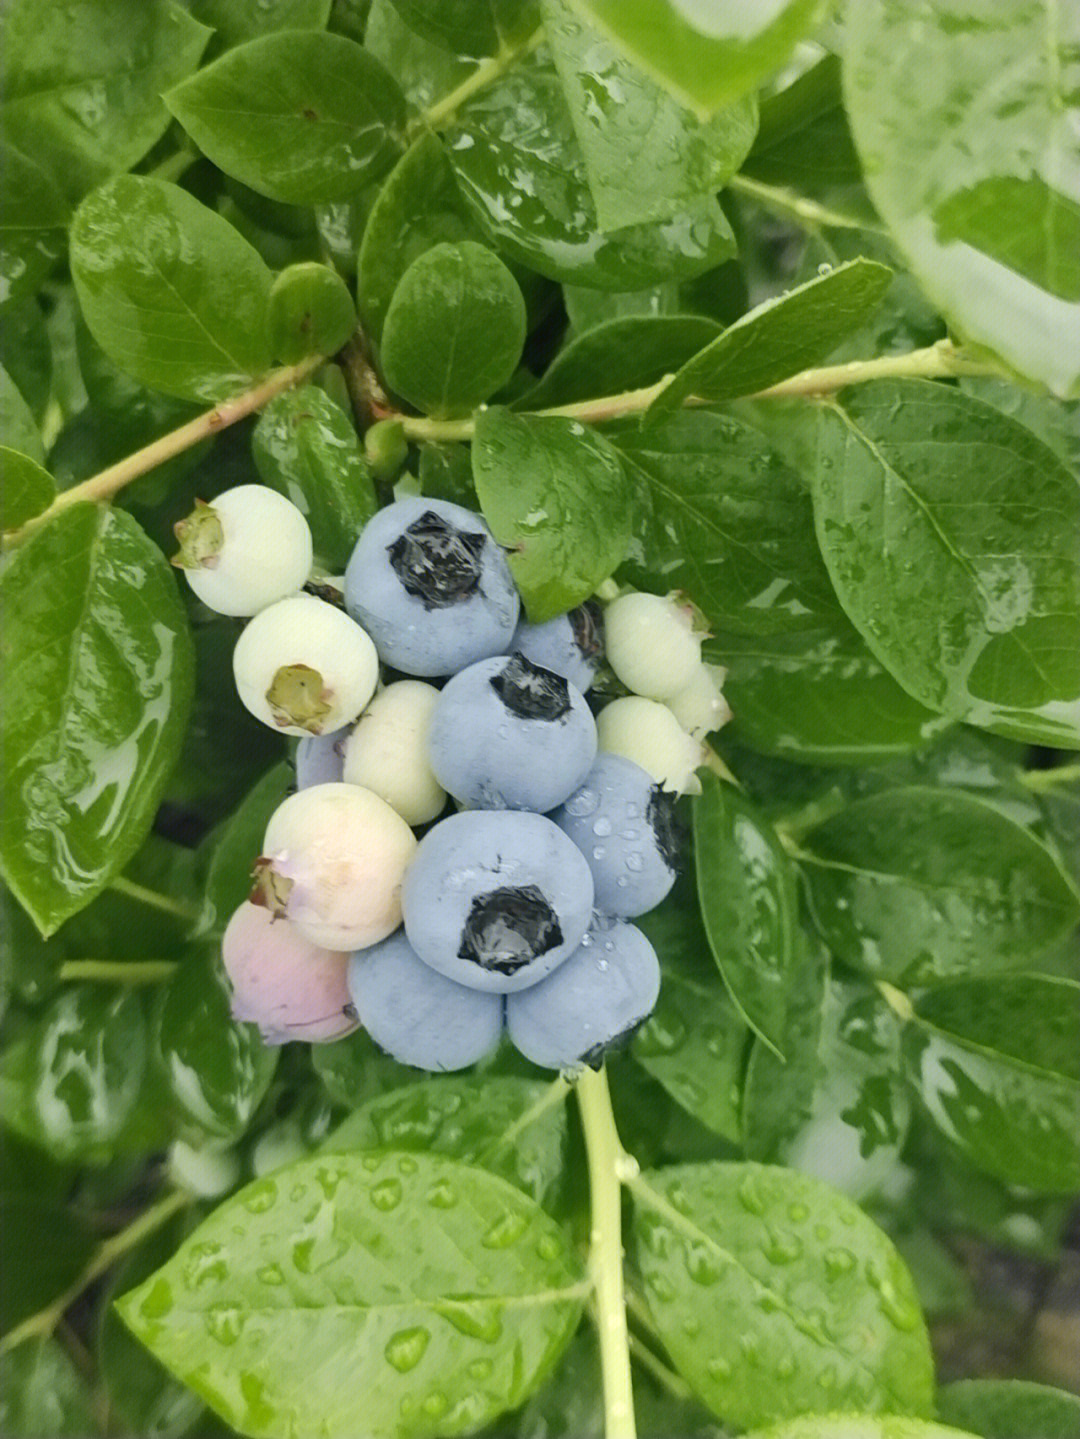 绿宝石蓝莓图片